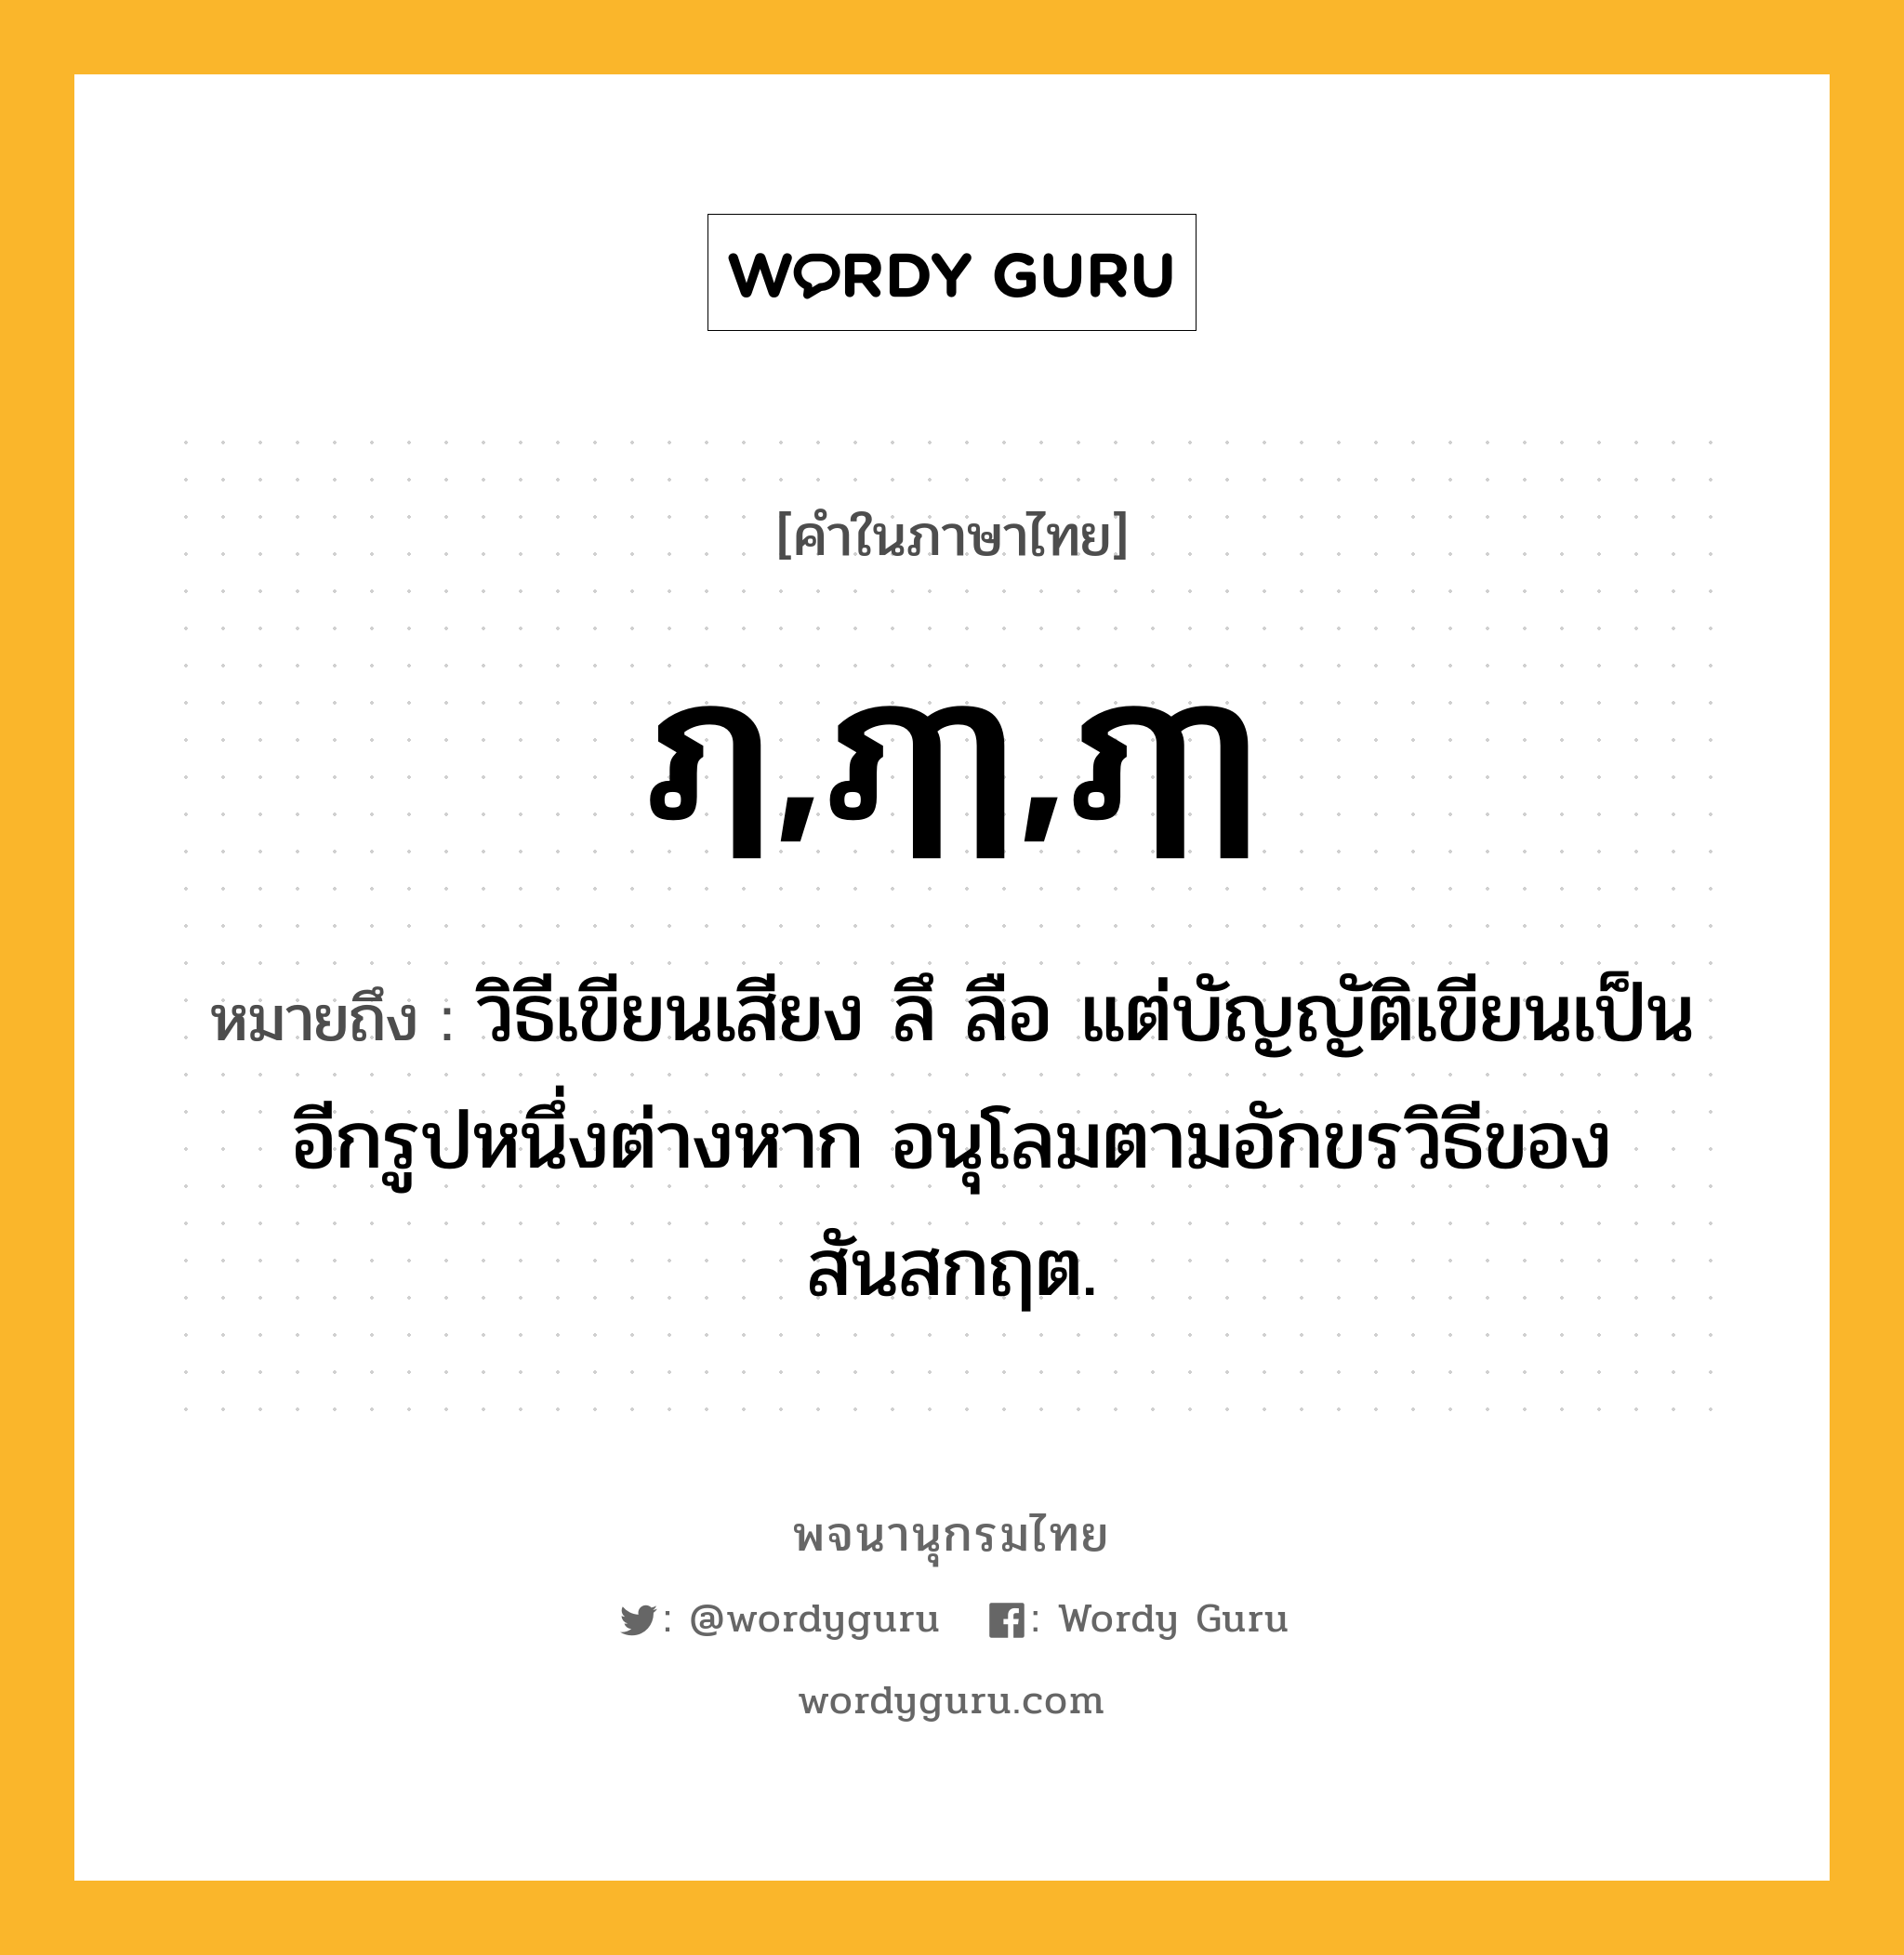 ฦ,ฦๅ,ฦๅ หมายถึงอะไร?, คำในภาษาไทย ฦ,ฦๅ,ฦๅ หมายถึง วิธีเขียนเสียง ลึ ลือ แต่บัญญัติเขียนเป็นอีกรูปหนึ่งต่างหาก อนุโลมตามอักขรวิธีของสันสกฤต.